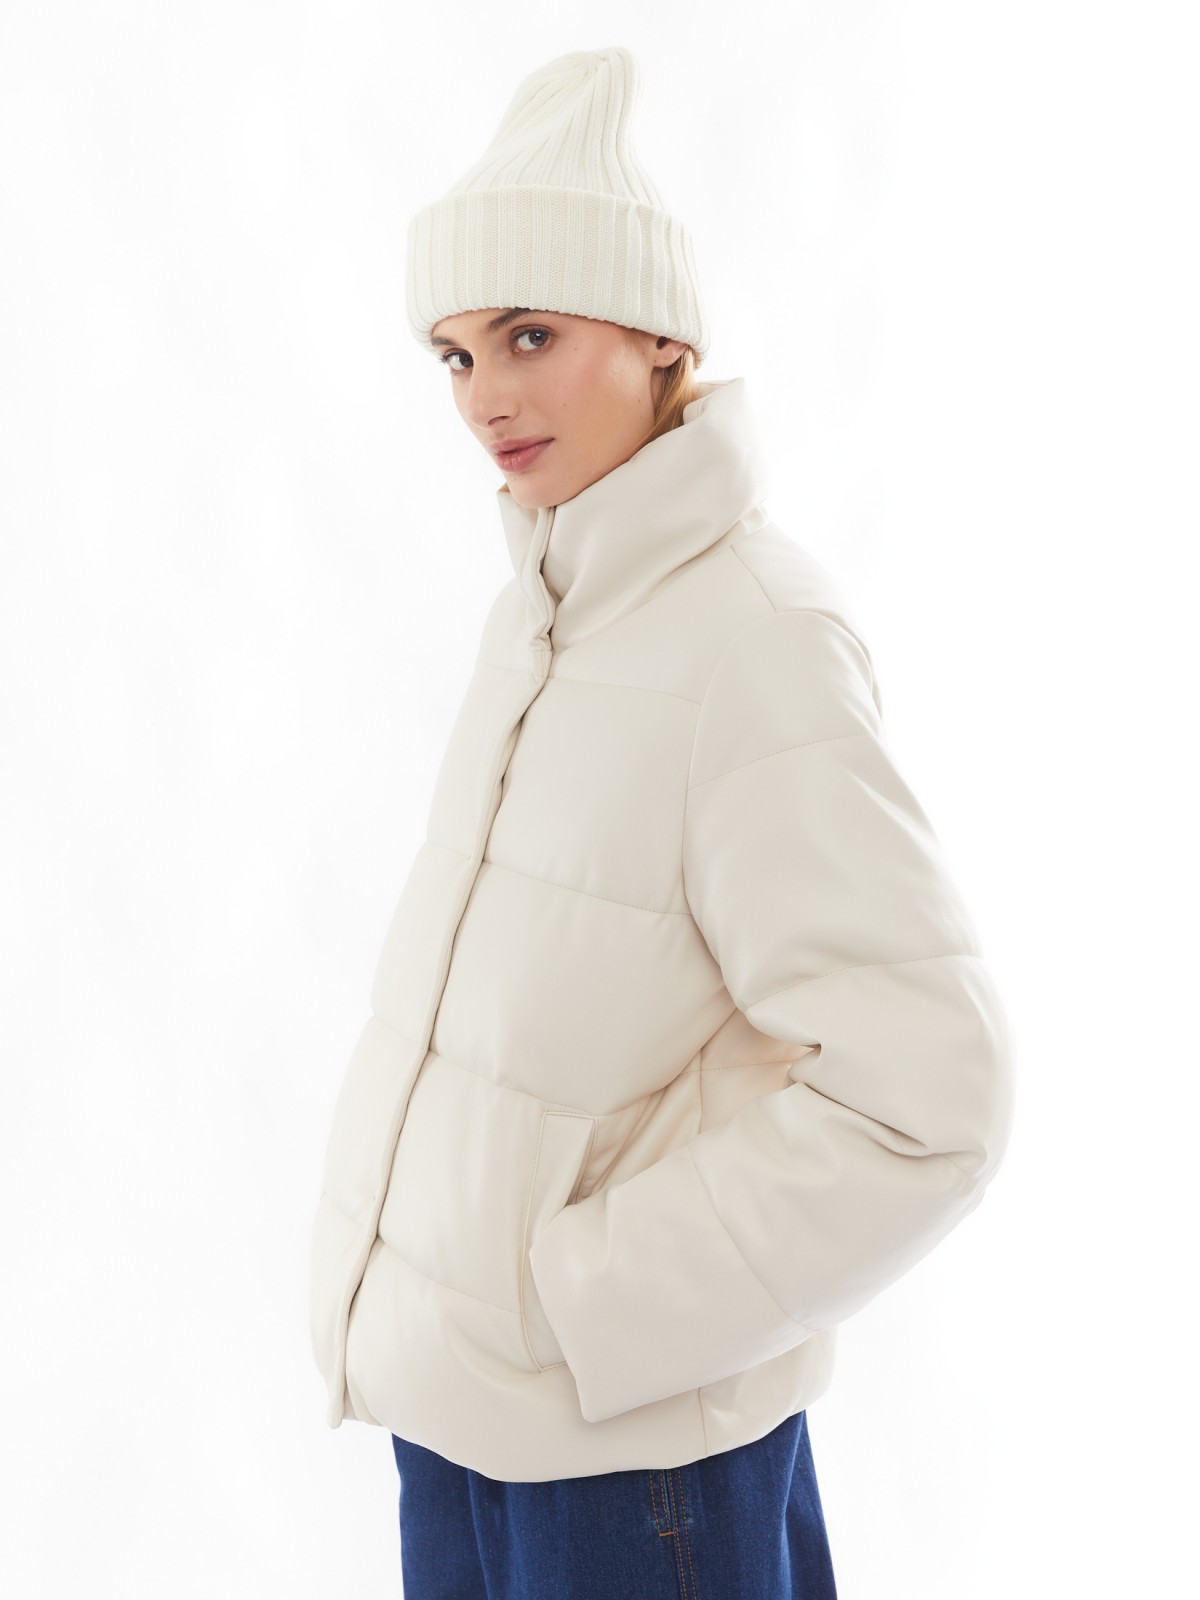 Тёплая стёганая дутая куртка из экокожи с высоким воротником zolla 02412516F044, цвет молоко, размер XS - фото 3